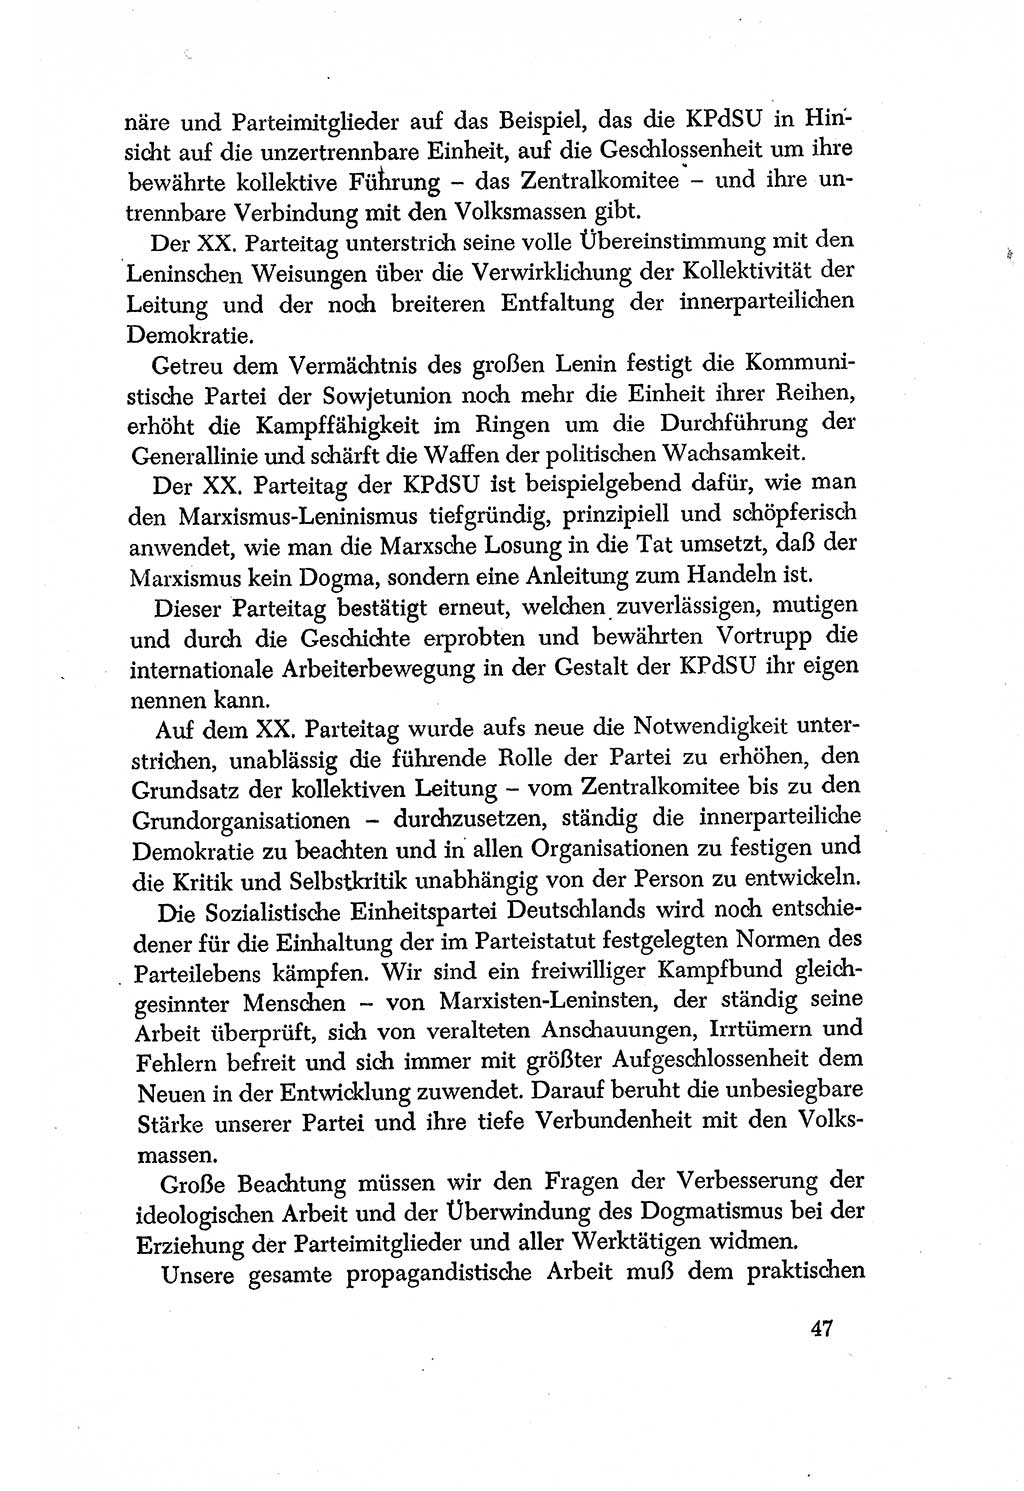 Dokumente der Sozialistischen Einheitspartei Deutschlands (SED) [Deutsche Demokratische Republik (DDR)] 1956-1957, Seite 47 (Dok. SED DDR 1956-1957, S. 47)